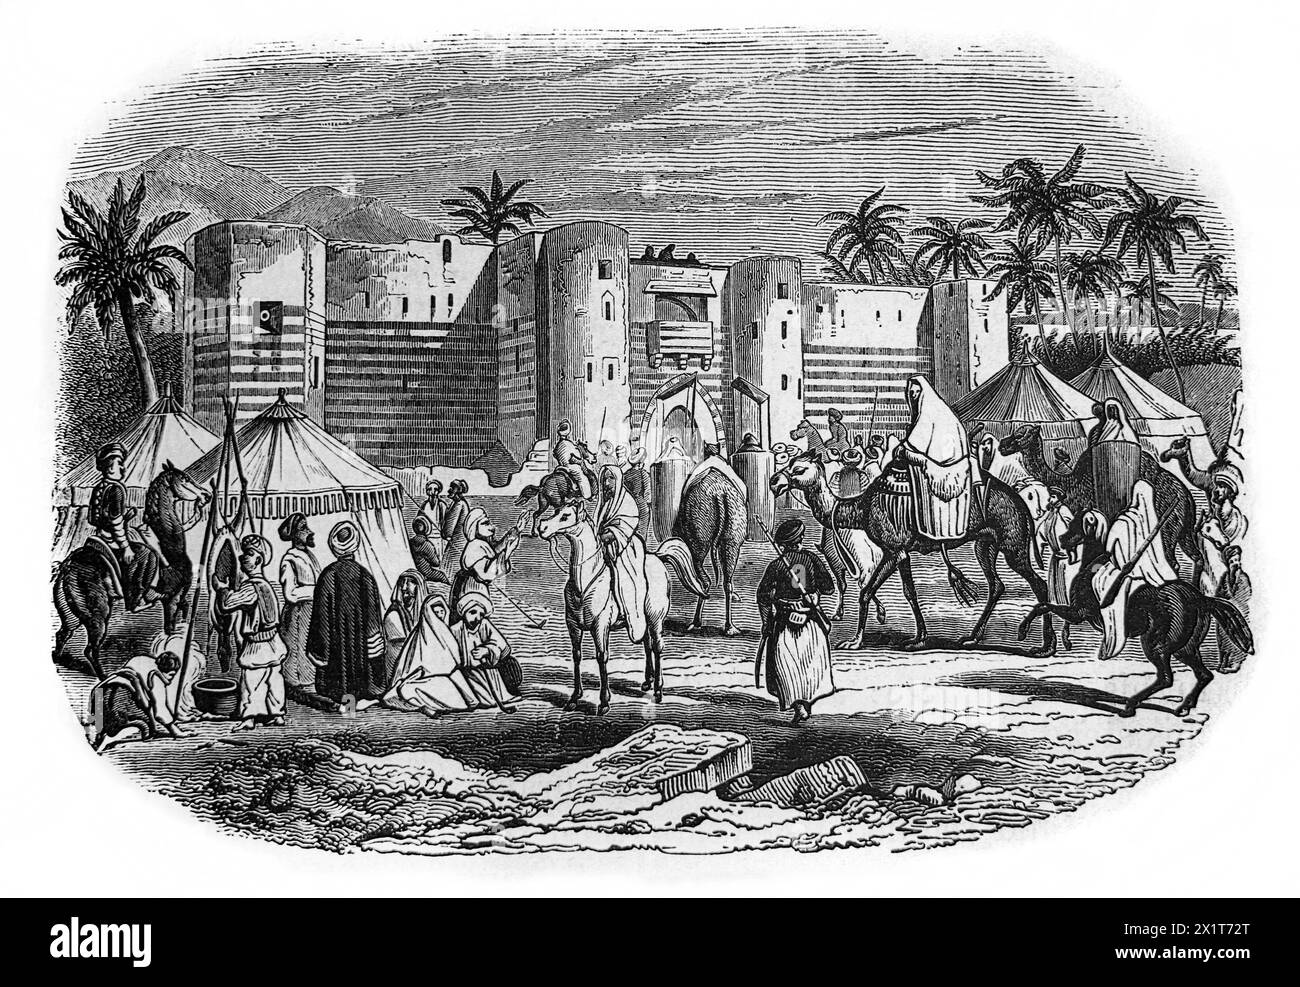 Incisione in legno della Fortezza di Aqaba con l'arrivo di una carovana di pellegrini sulla via del pellegrinaggio per la Mecca dal Famil illustrato del XIX secolo Foto Stock